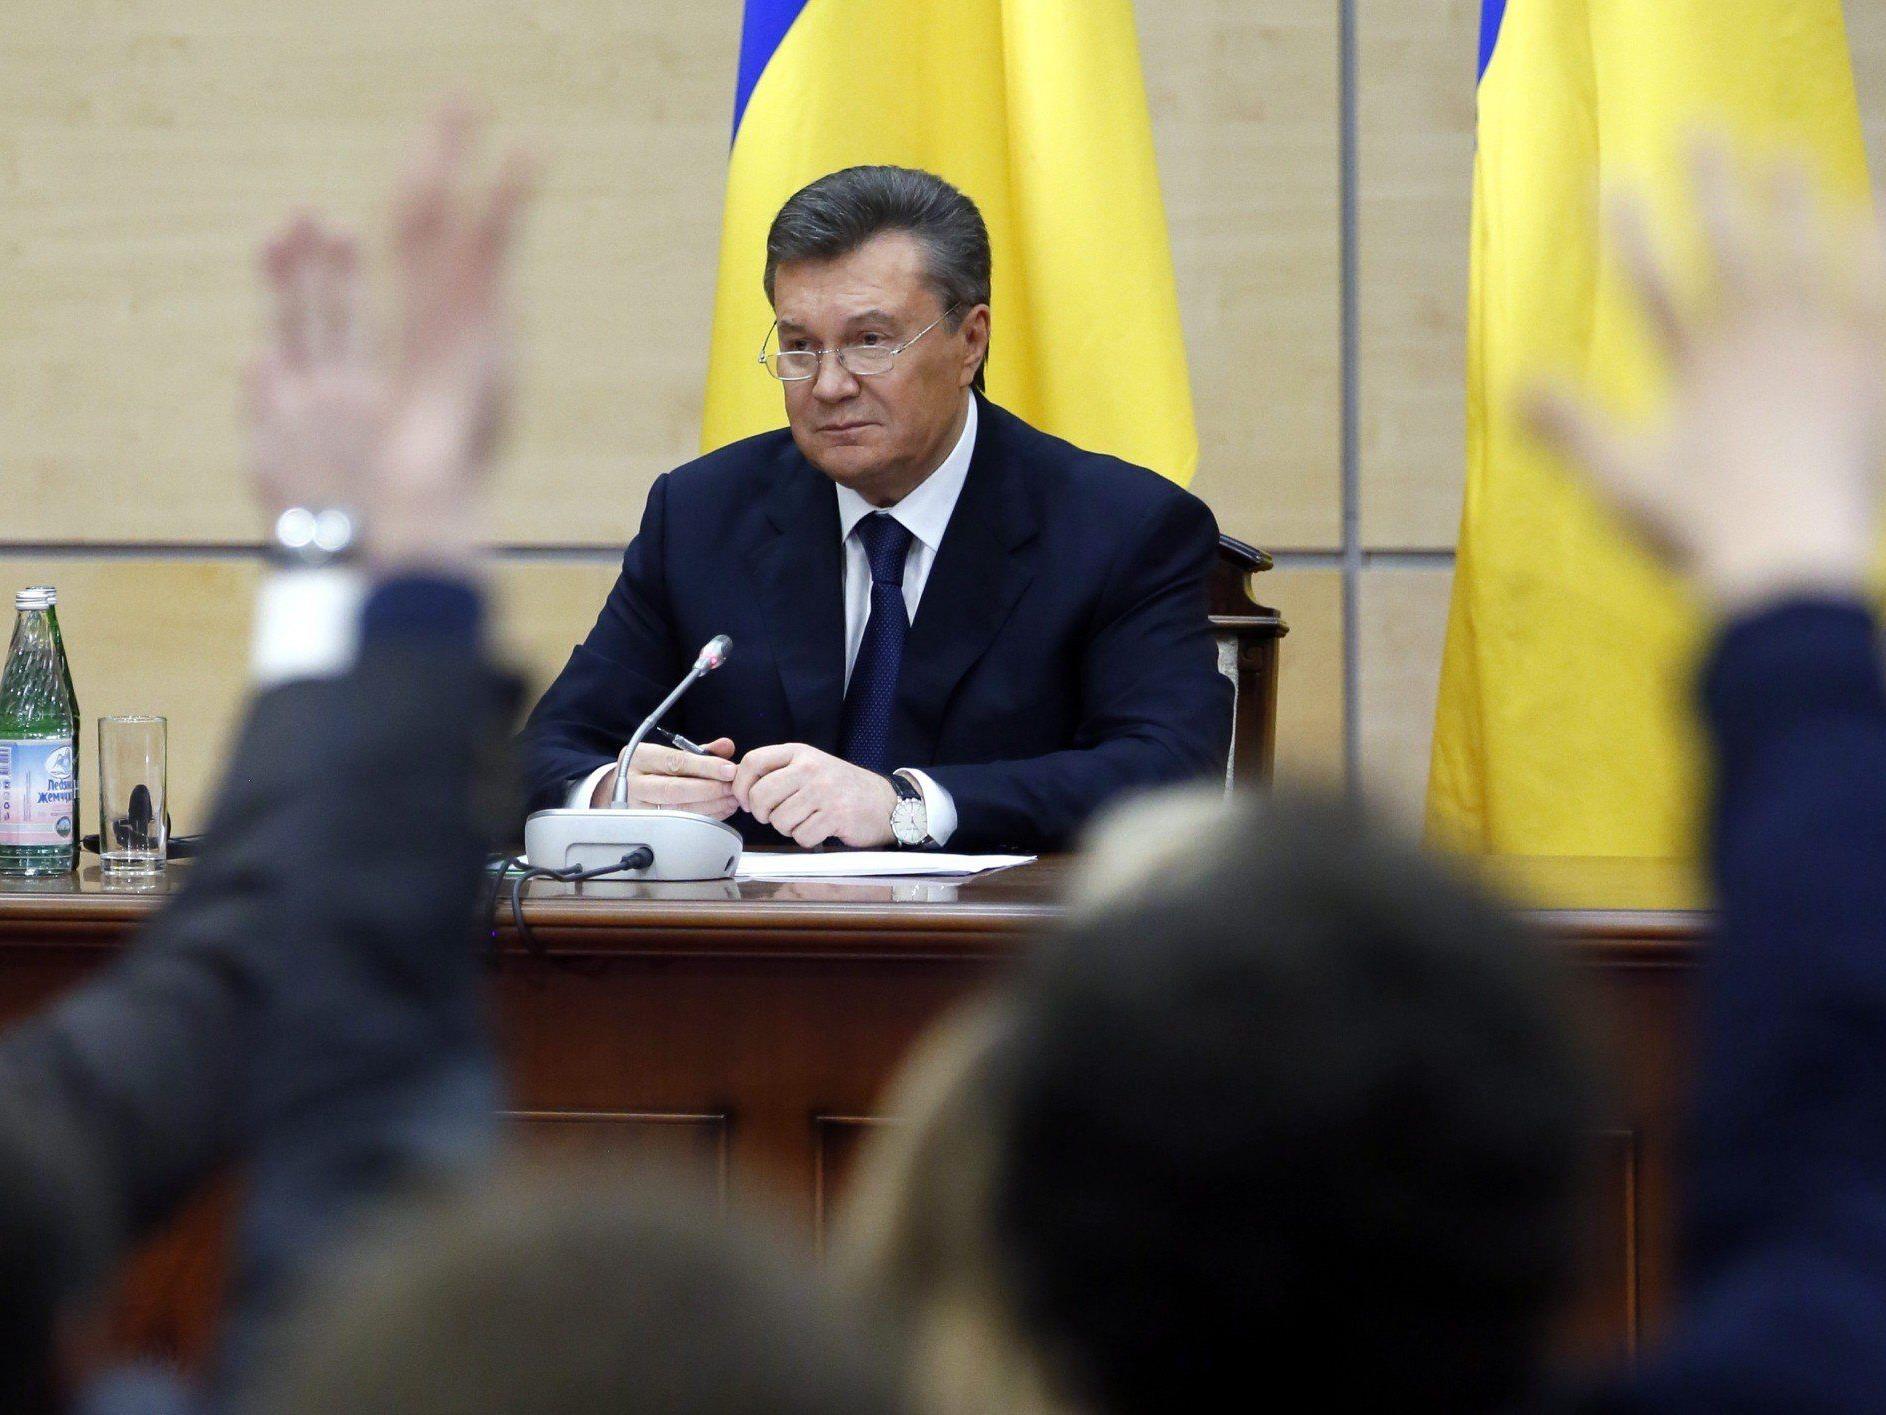 Gestürzter Präsident der Ukraine, Viktor Janukowitsch, wirft Westen Wortbruch vor